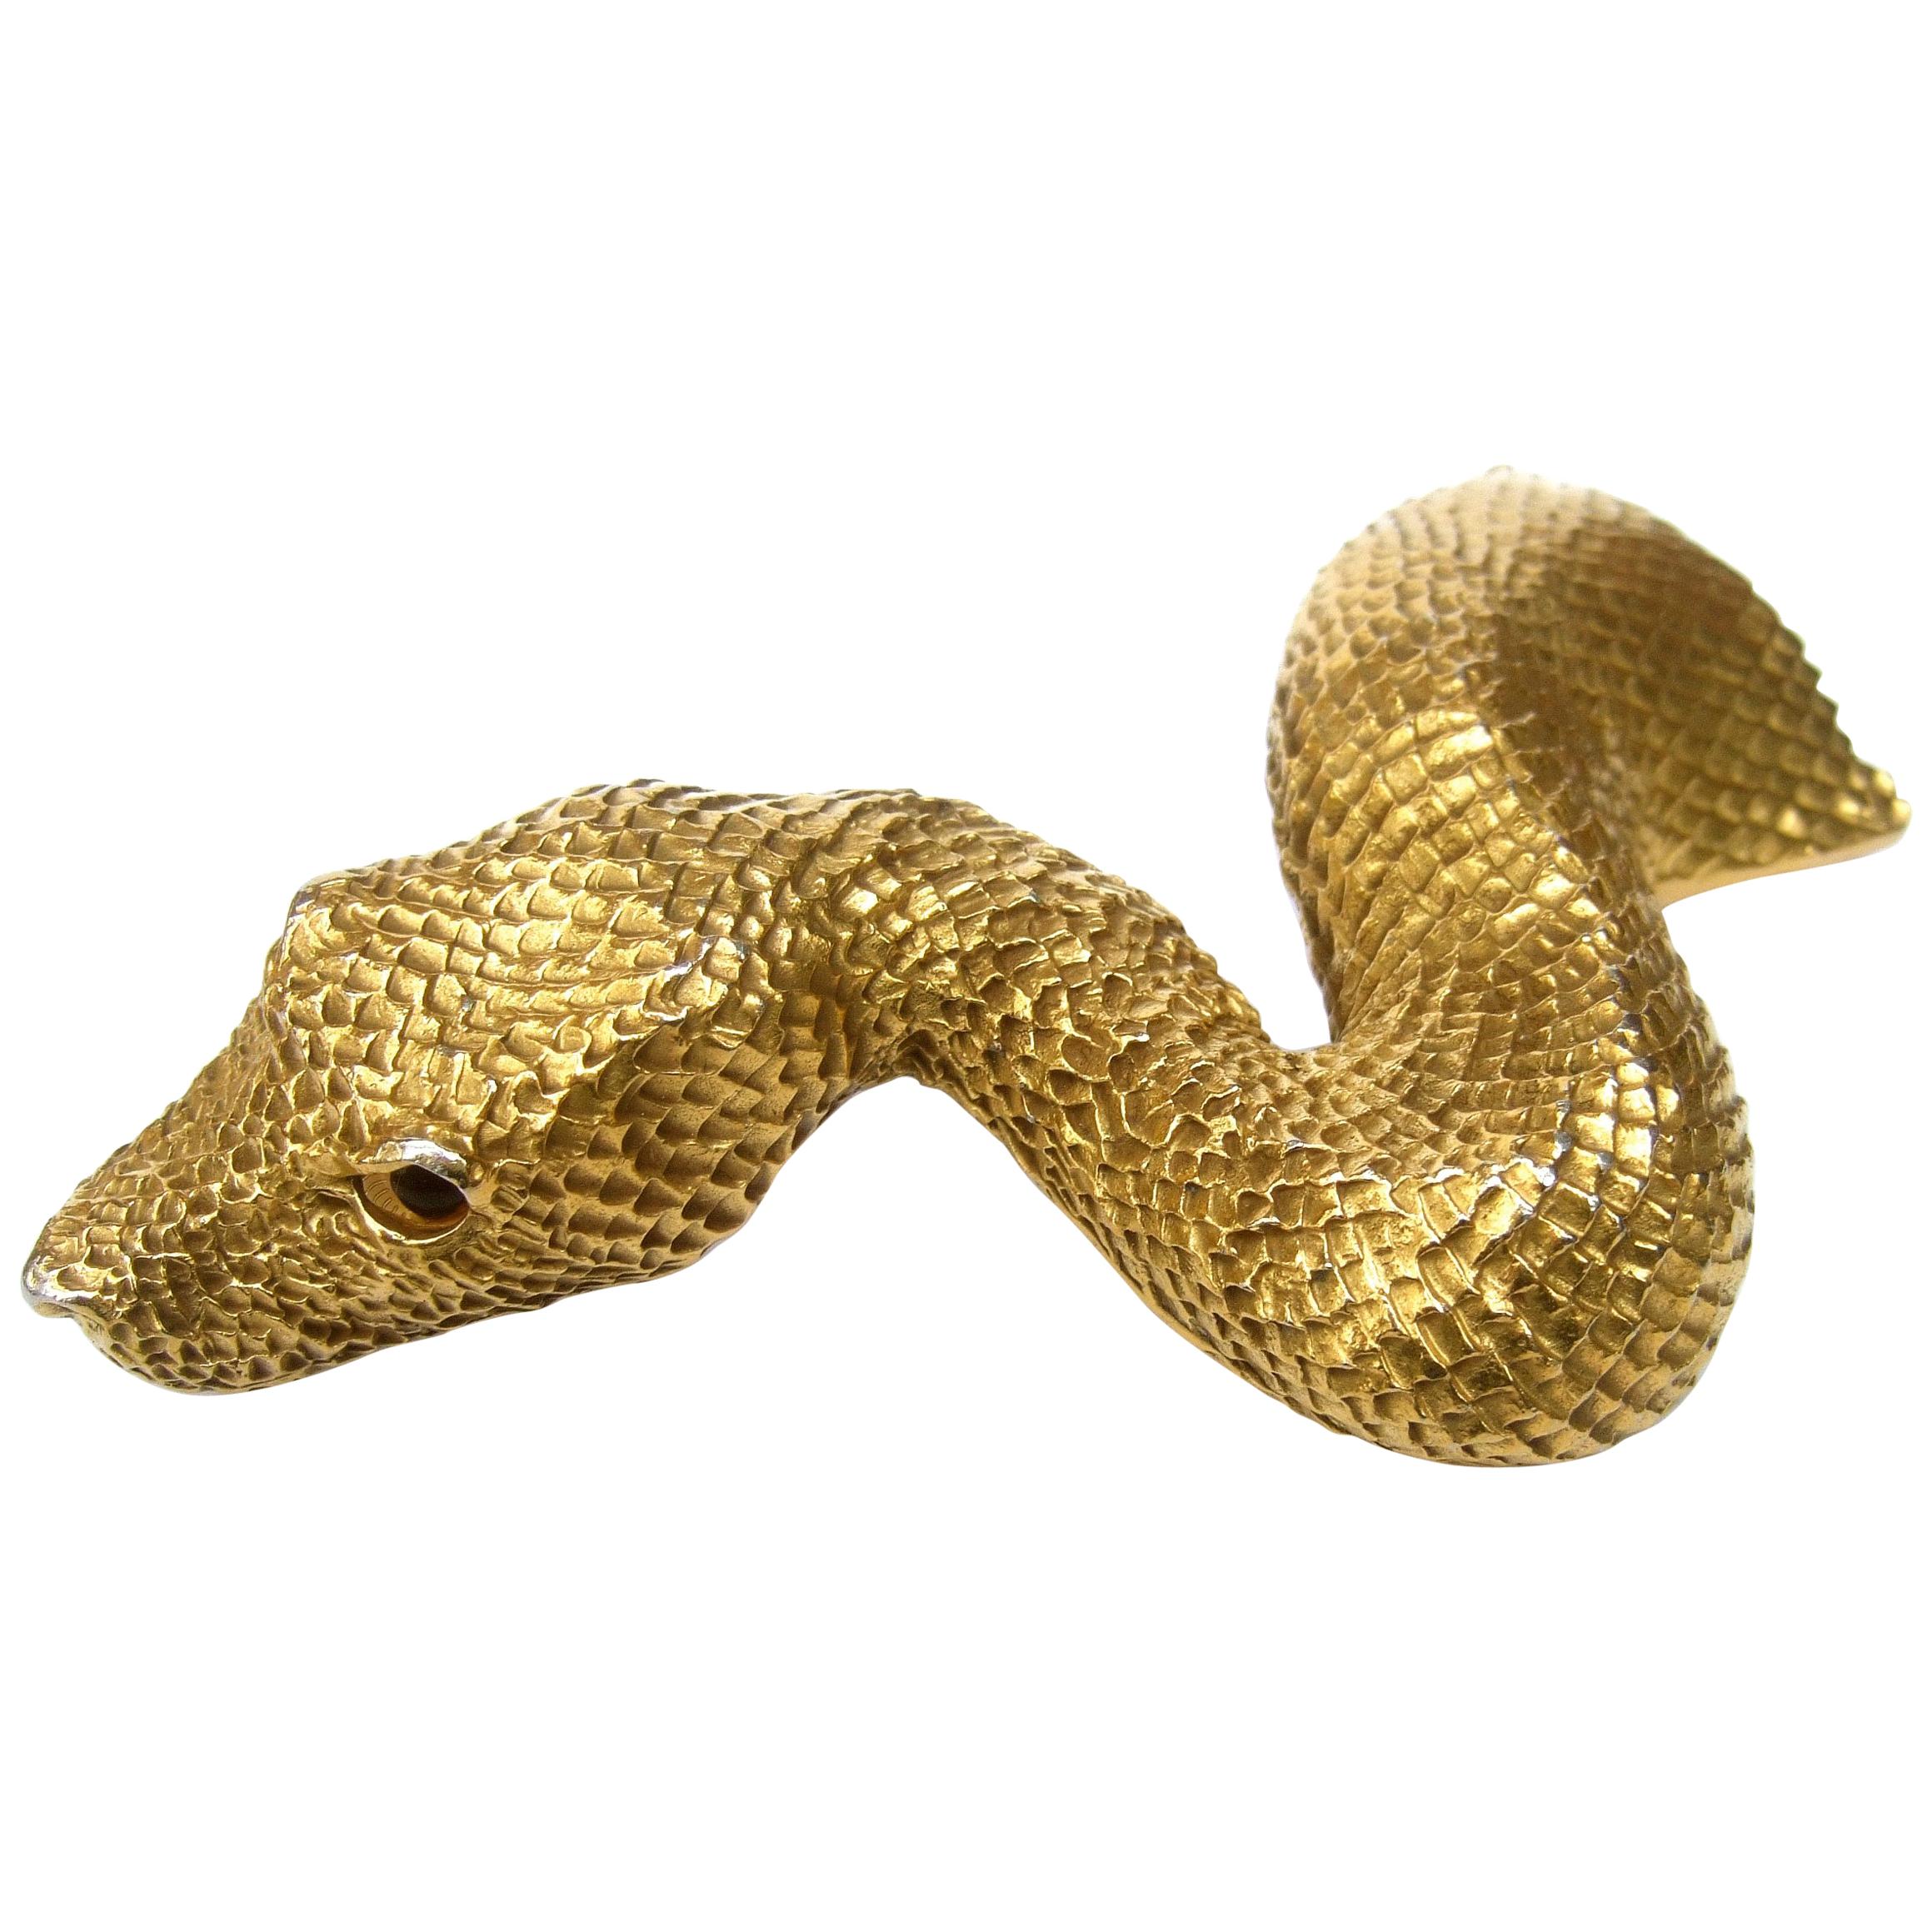 Christopher Ross 24k Gold Plated Serpent Belt Buckle circa 1980